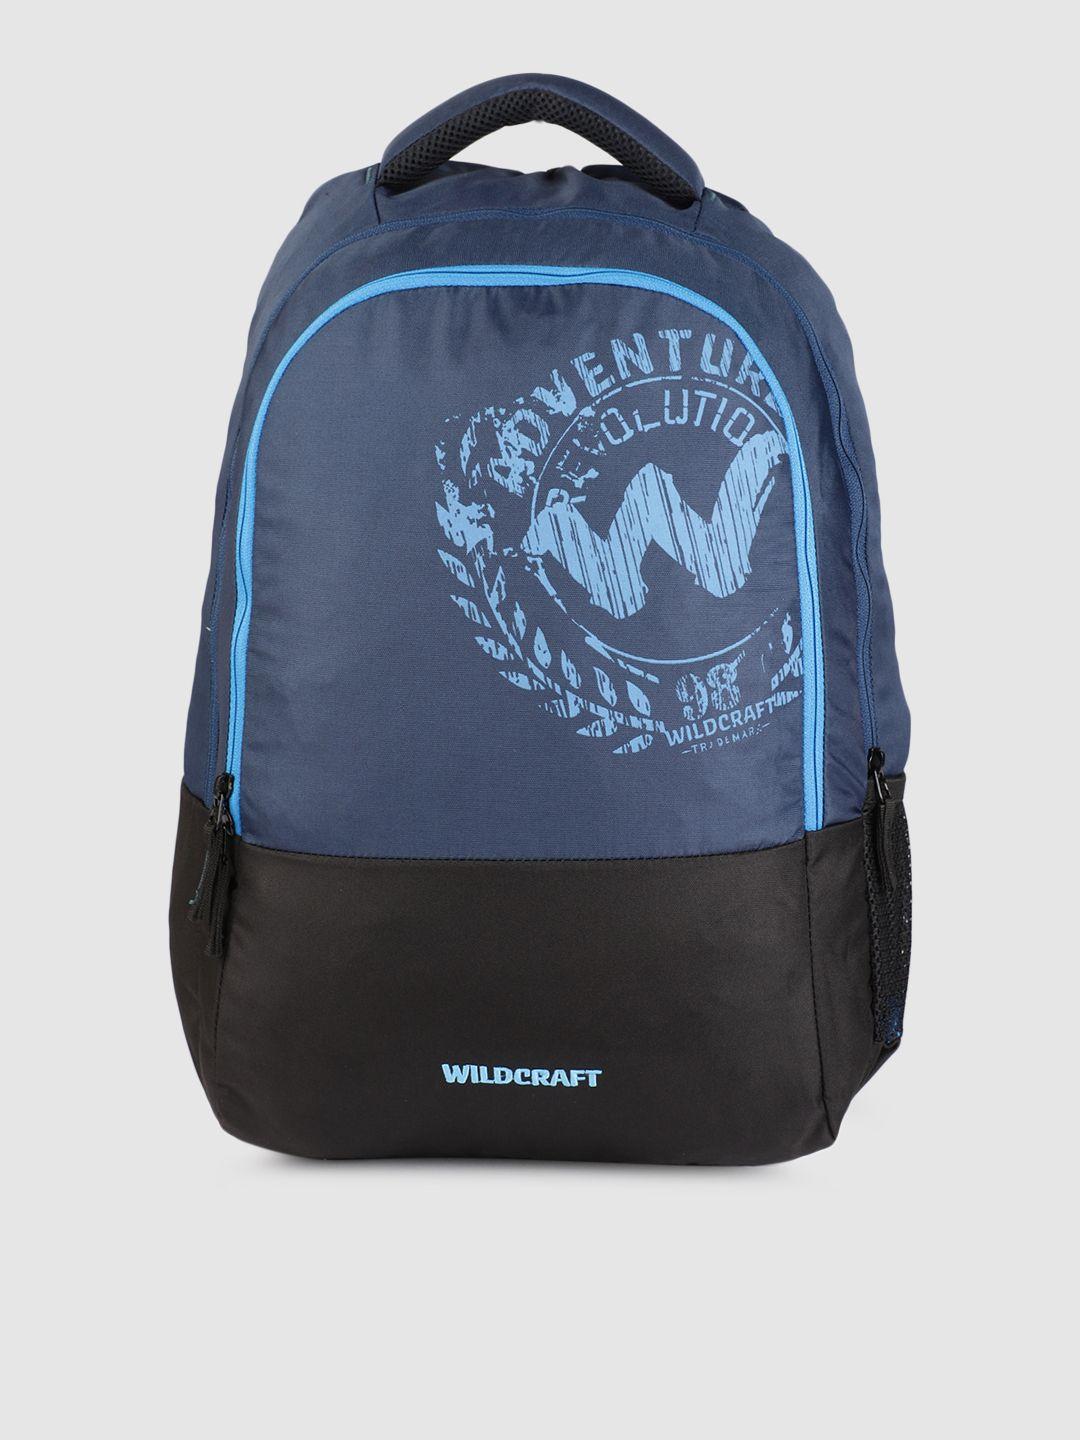 wildcraft unisex navy blue graphic spirit backpack